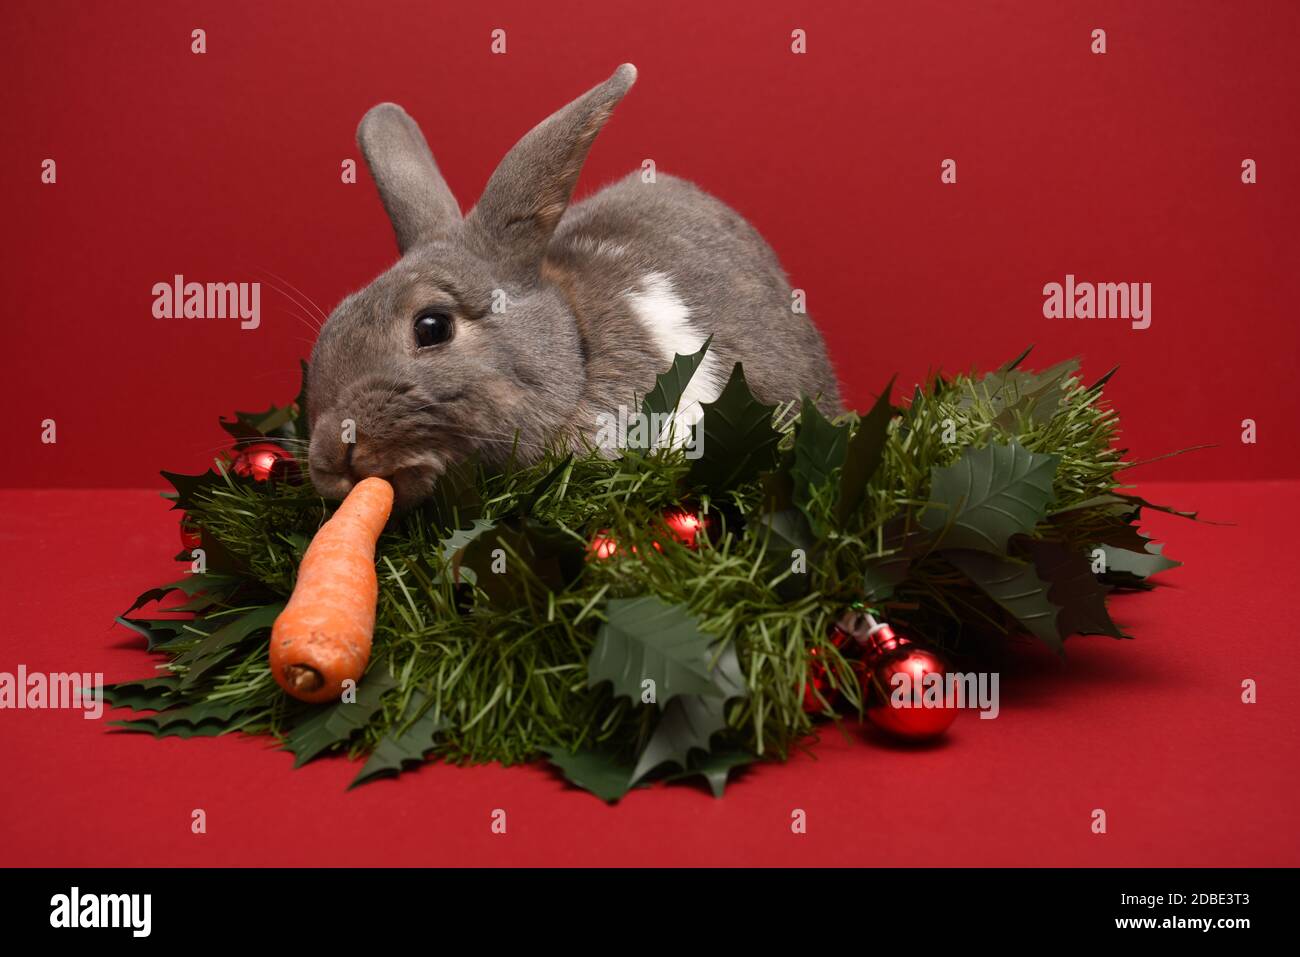 Conejo comiendo una zanahoria en una guirnalda de Navidad Foto de stock